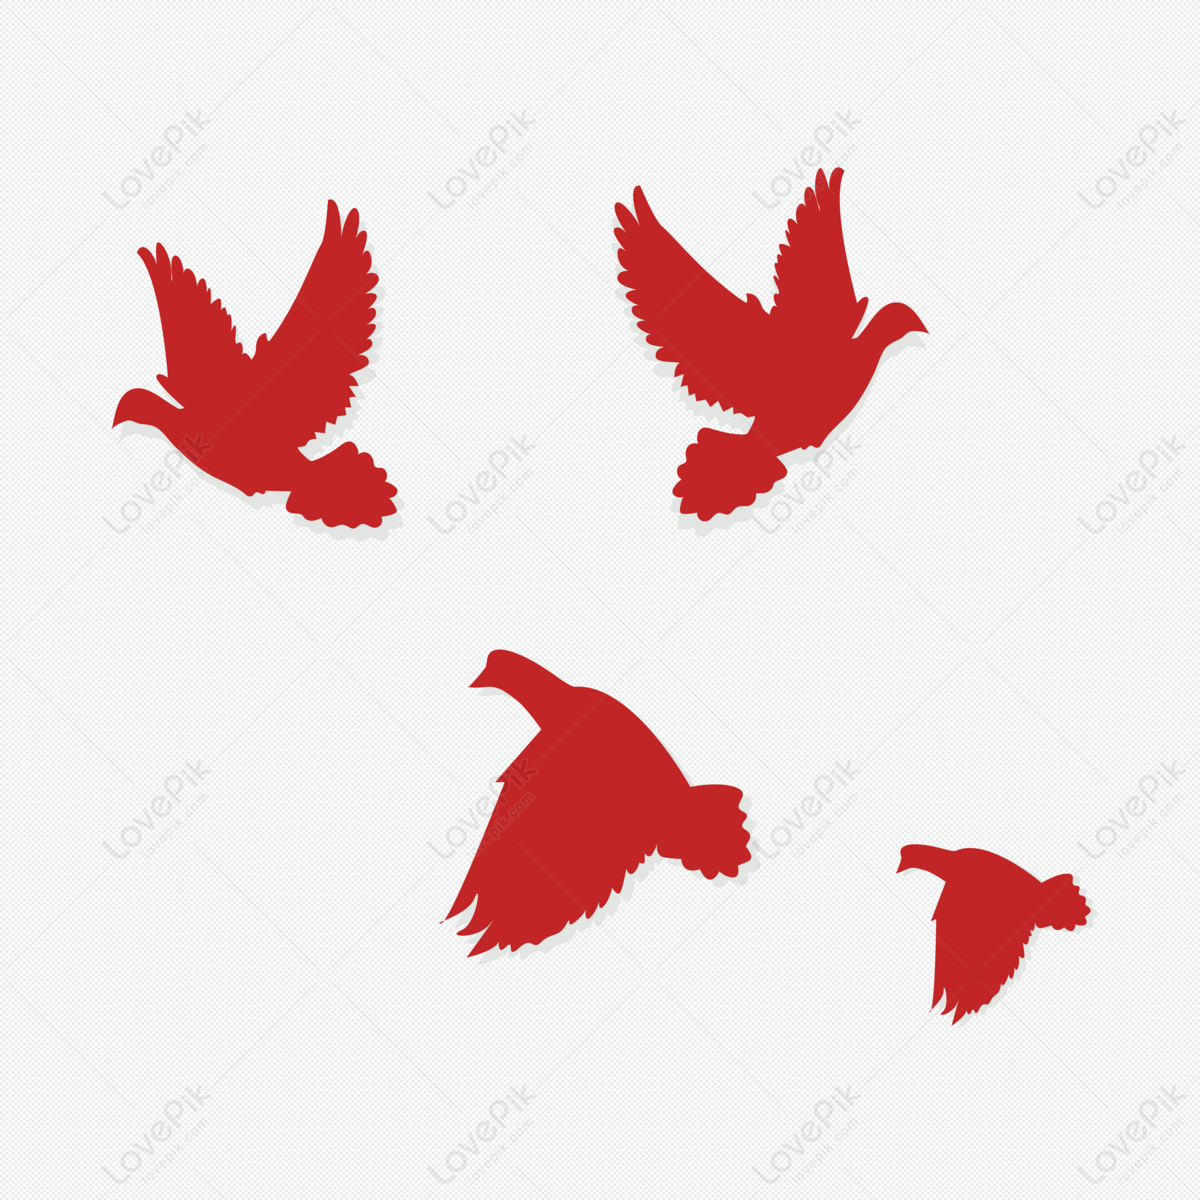 Chim Bồ Câu đỏ (Red dove bird): Chiêm ngưỡng hình ảnh đầy màu sắc của Chim Bồ Câu đỏ đầy nét duyên dáng. Khám phá nét đẹp hoang dã của loài chim này thông qua hình ảnh chụp rất gần và chân thực. Sự nhuần nhuyễn và tinh tế giữa đỏ và trắng của lông chim khiến cho nó trở thành một món quà thiên nhiên vô cùng đặc biệt.